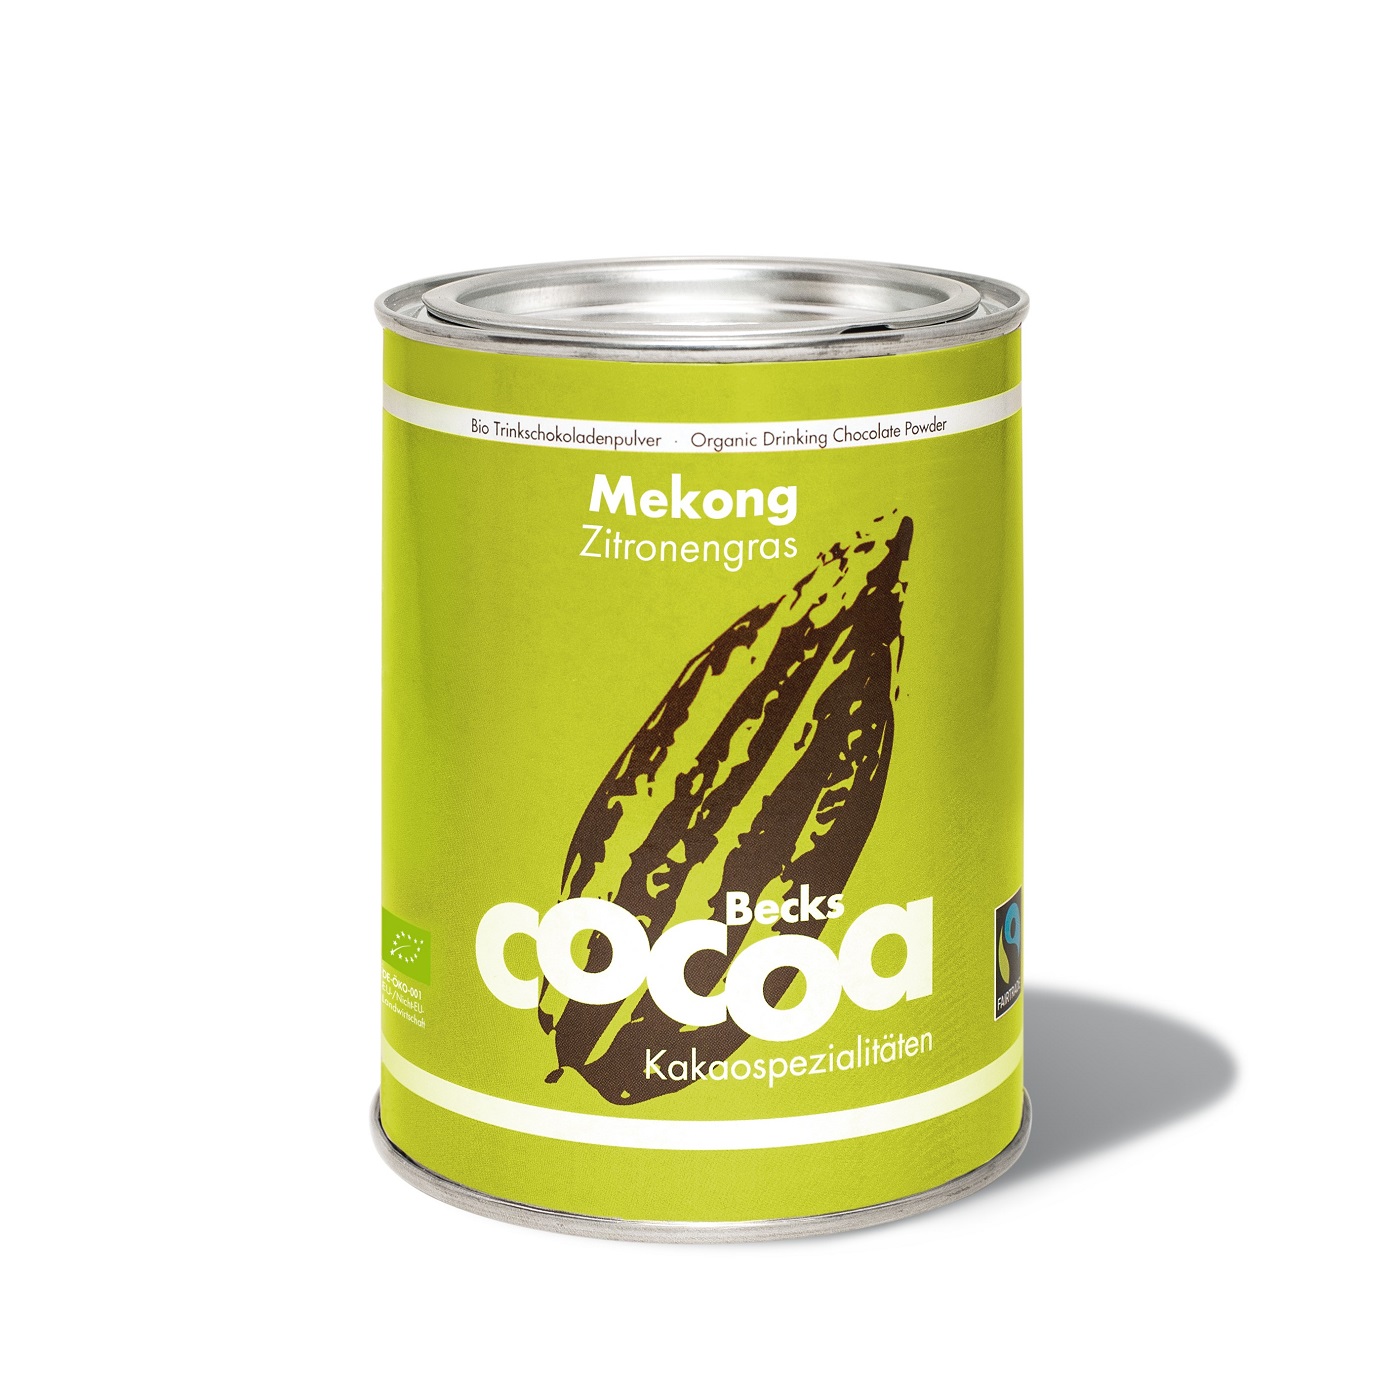 Becks Cocoa Mekong Zitronengras Dose 250g